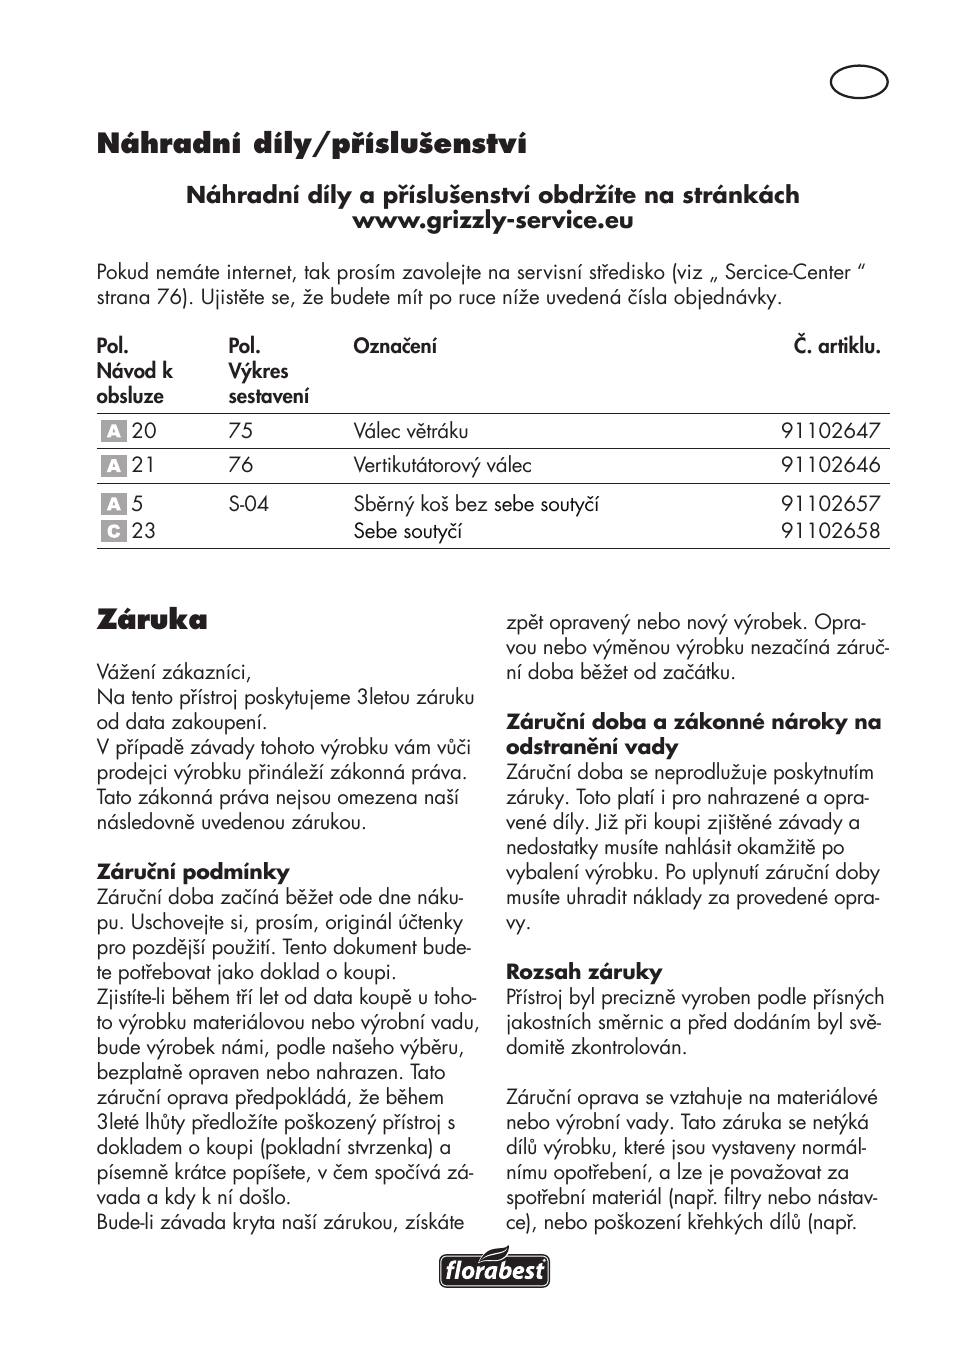 Náhradní díly/příslušenství, Záruka | Florabest FLV 1200 A1 User Manual |  Page 75 / 116